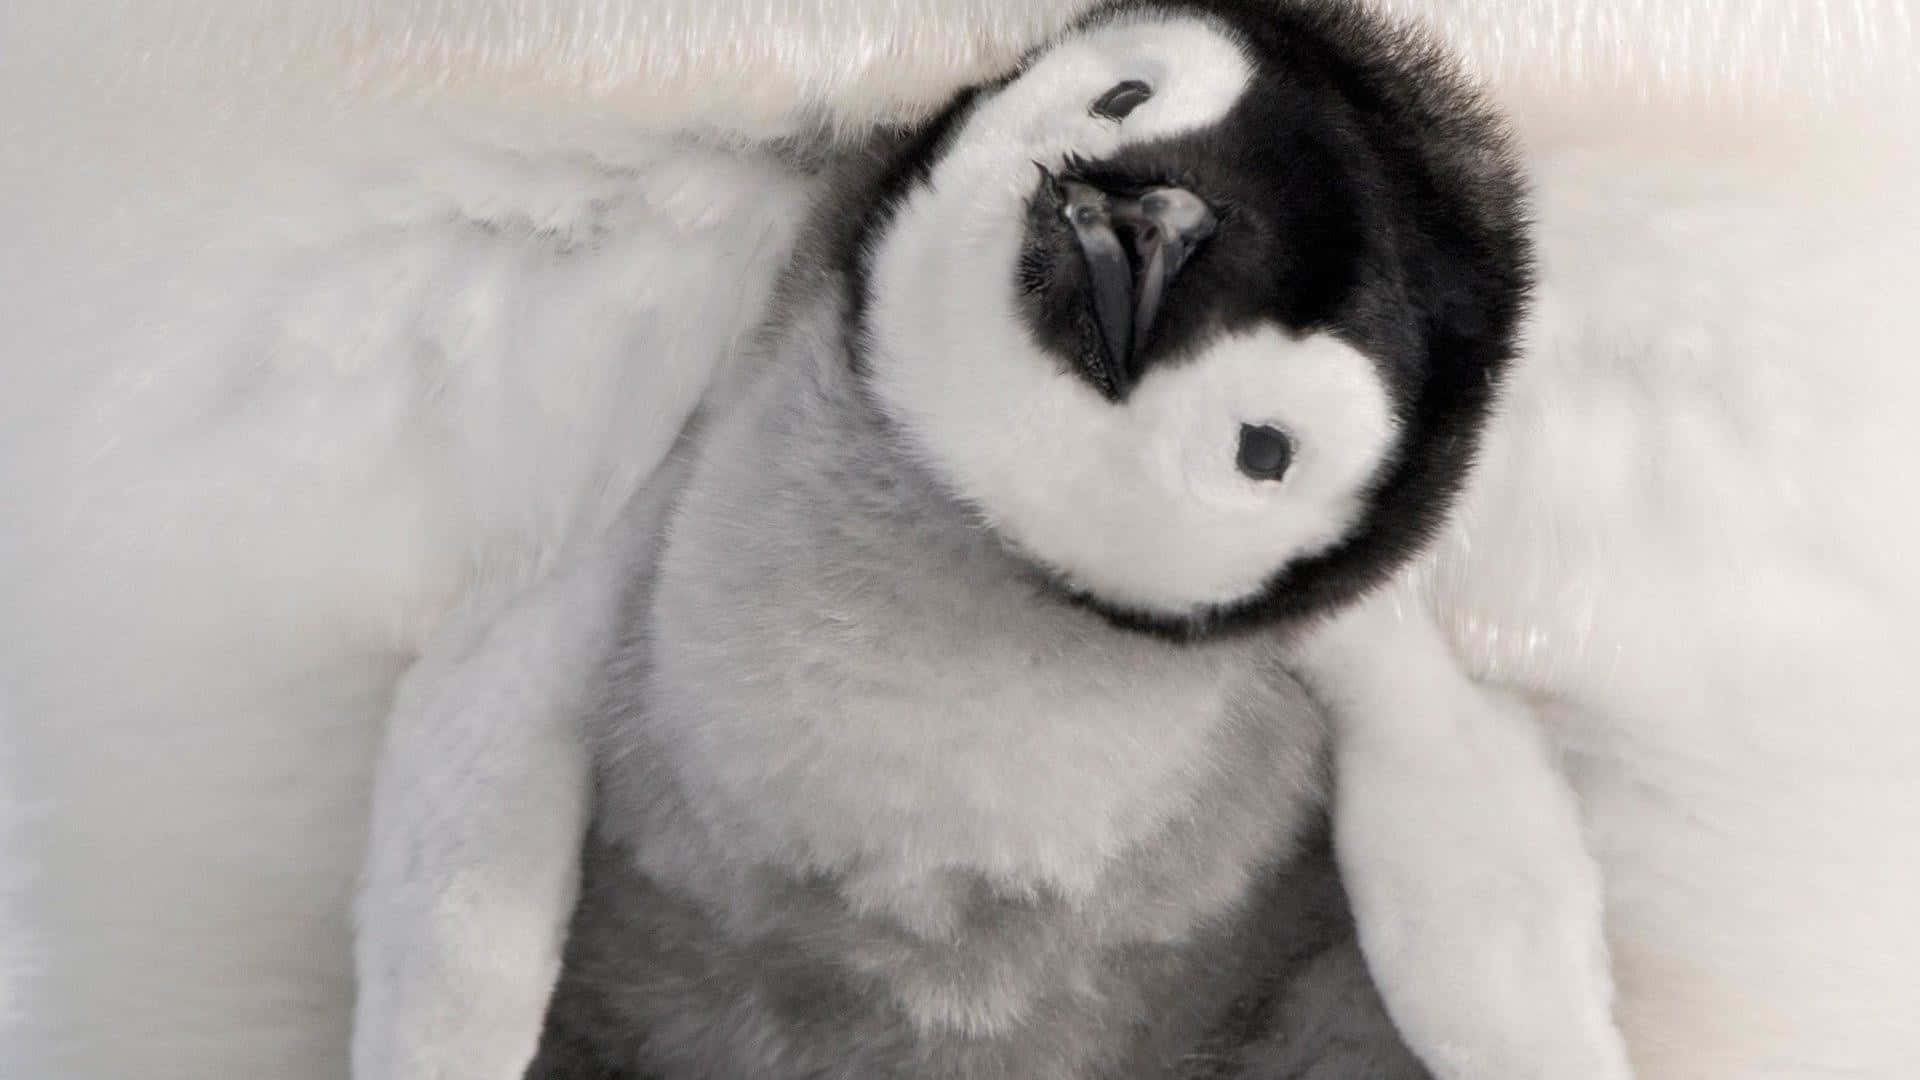 Imagende Un Lindo Pingüino Bebé En La Nieve.